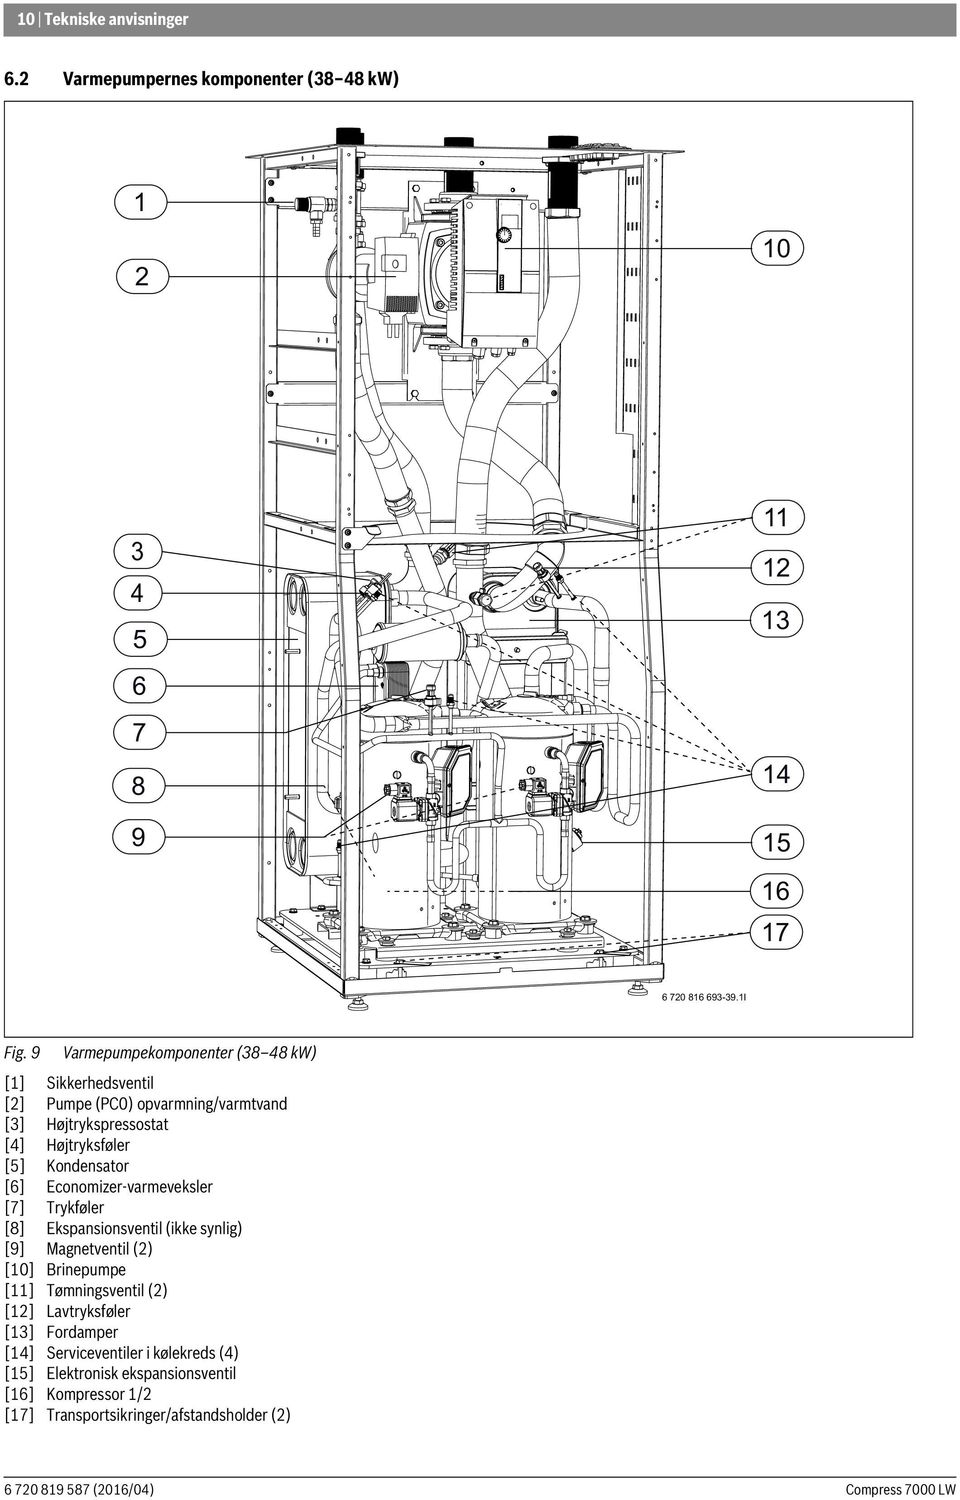 Kondensator [6] Economizer-varmeveksler [7] Trykføler [8] Ekspansionsventil (ikke synlig) [9] Magnetventil (2) [10] Brinepumpe [11] Tømningsventil